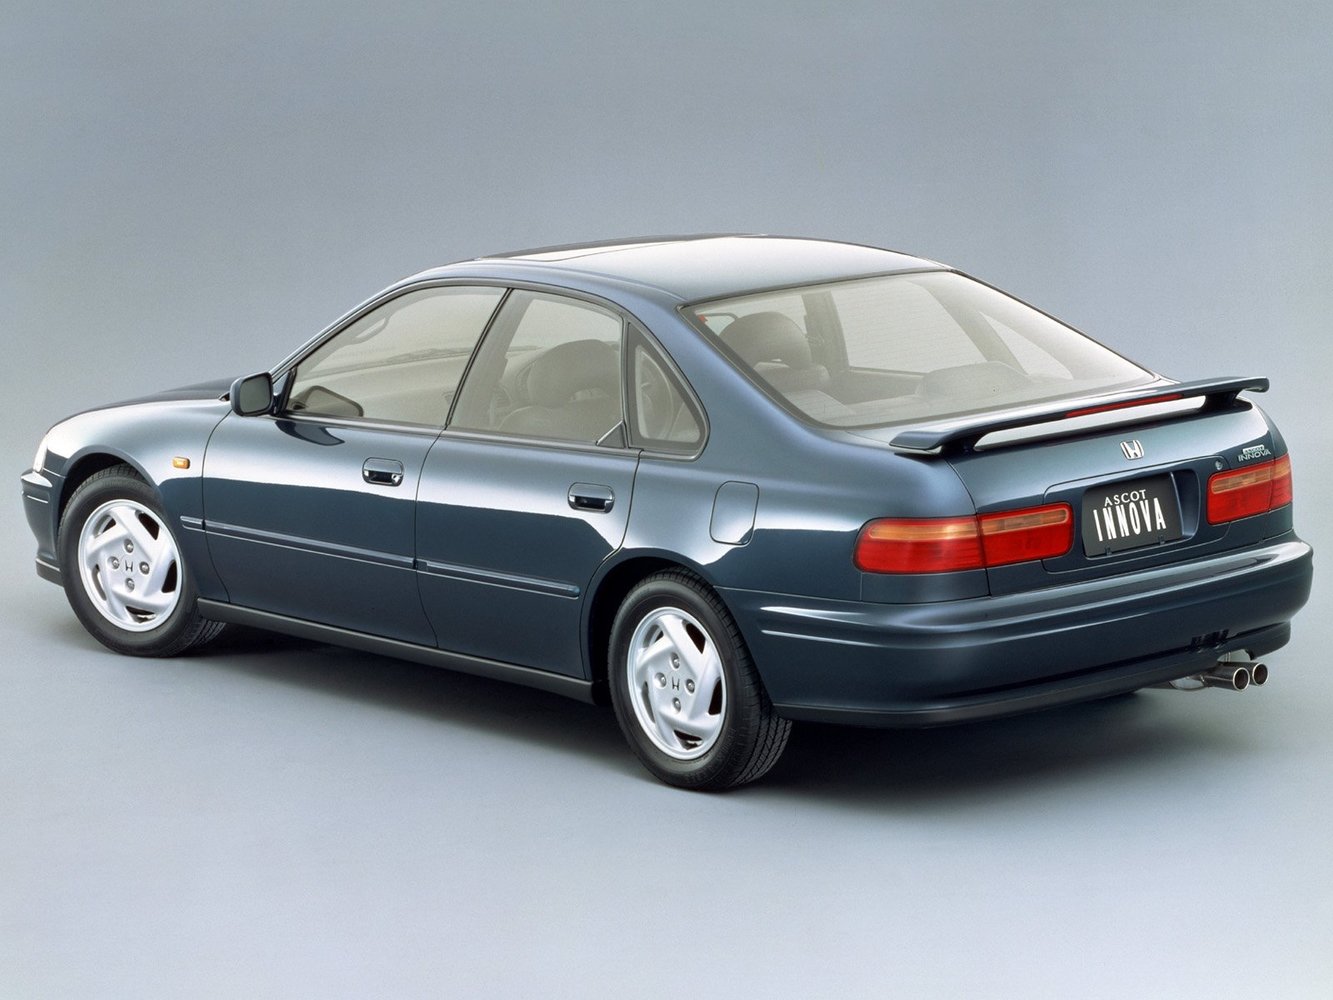 седан Honda Ascot Innova 1992 - 1996г выпуска модификация 2.0 AT (135 л.с.)